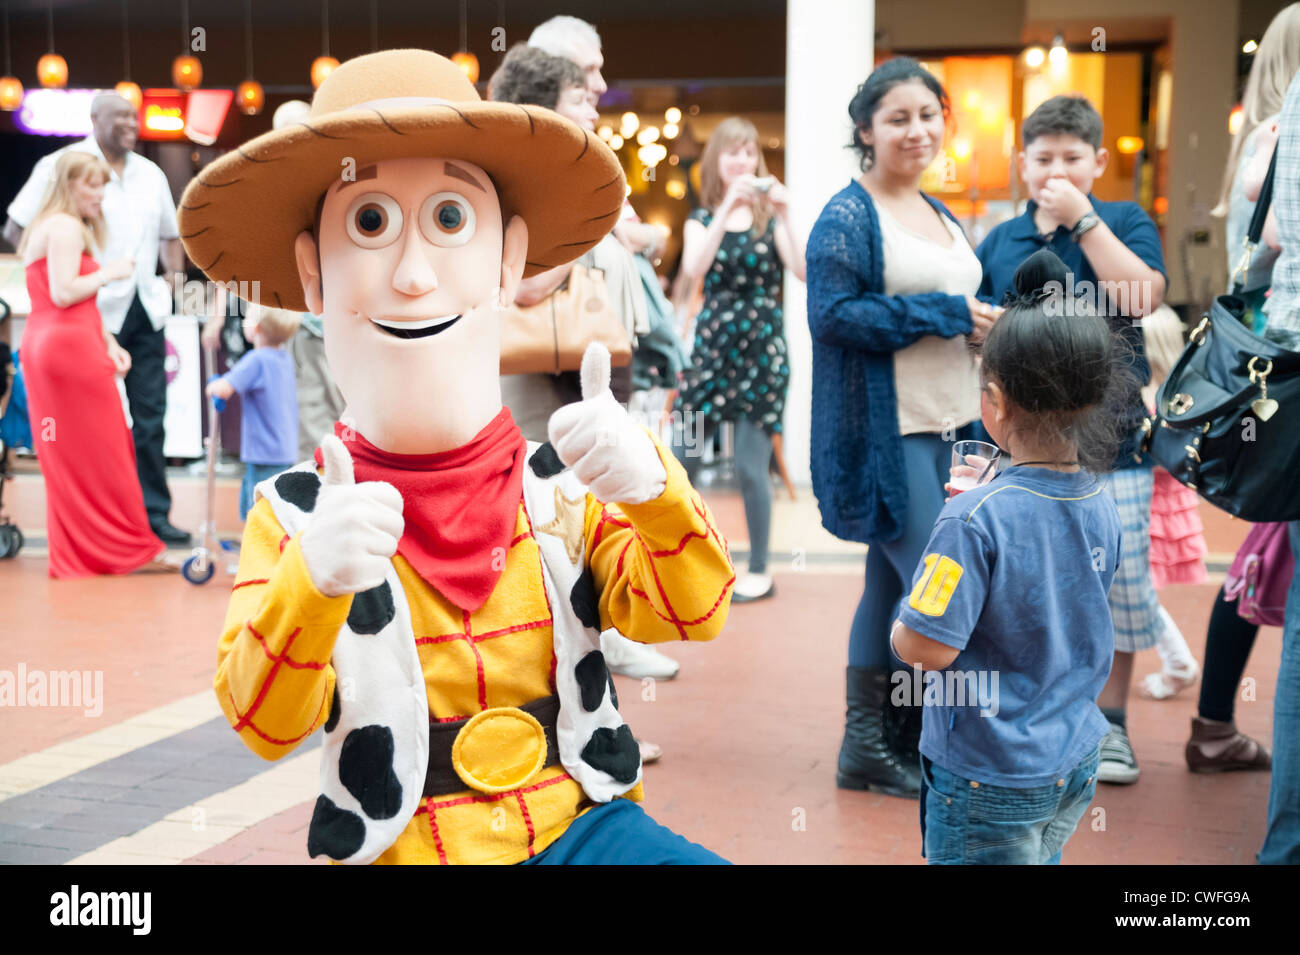 Kinderanimateurin Woody Figur aus "Toy Story", Cardiff, Wales. Kinder mit einem Mann, gekleidet wie ein Walt Disney-Figur. Stockfoto